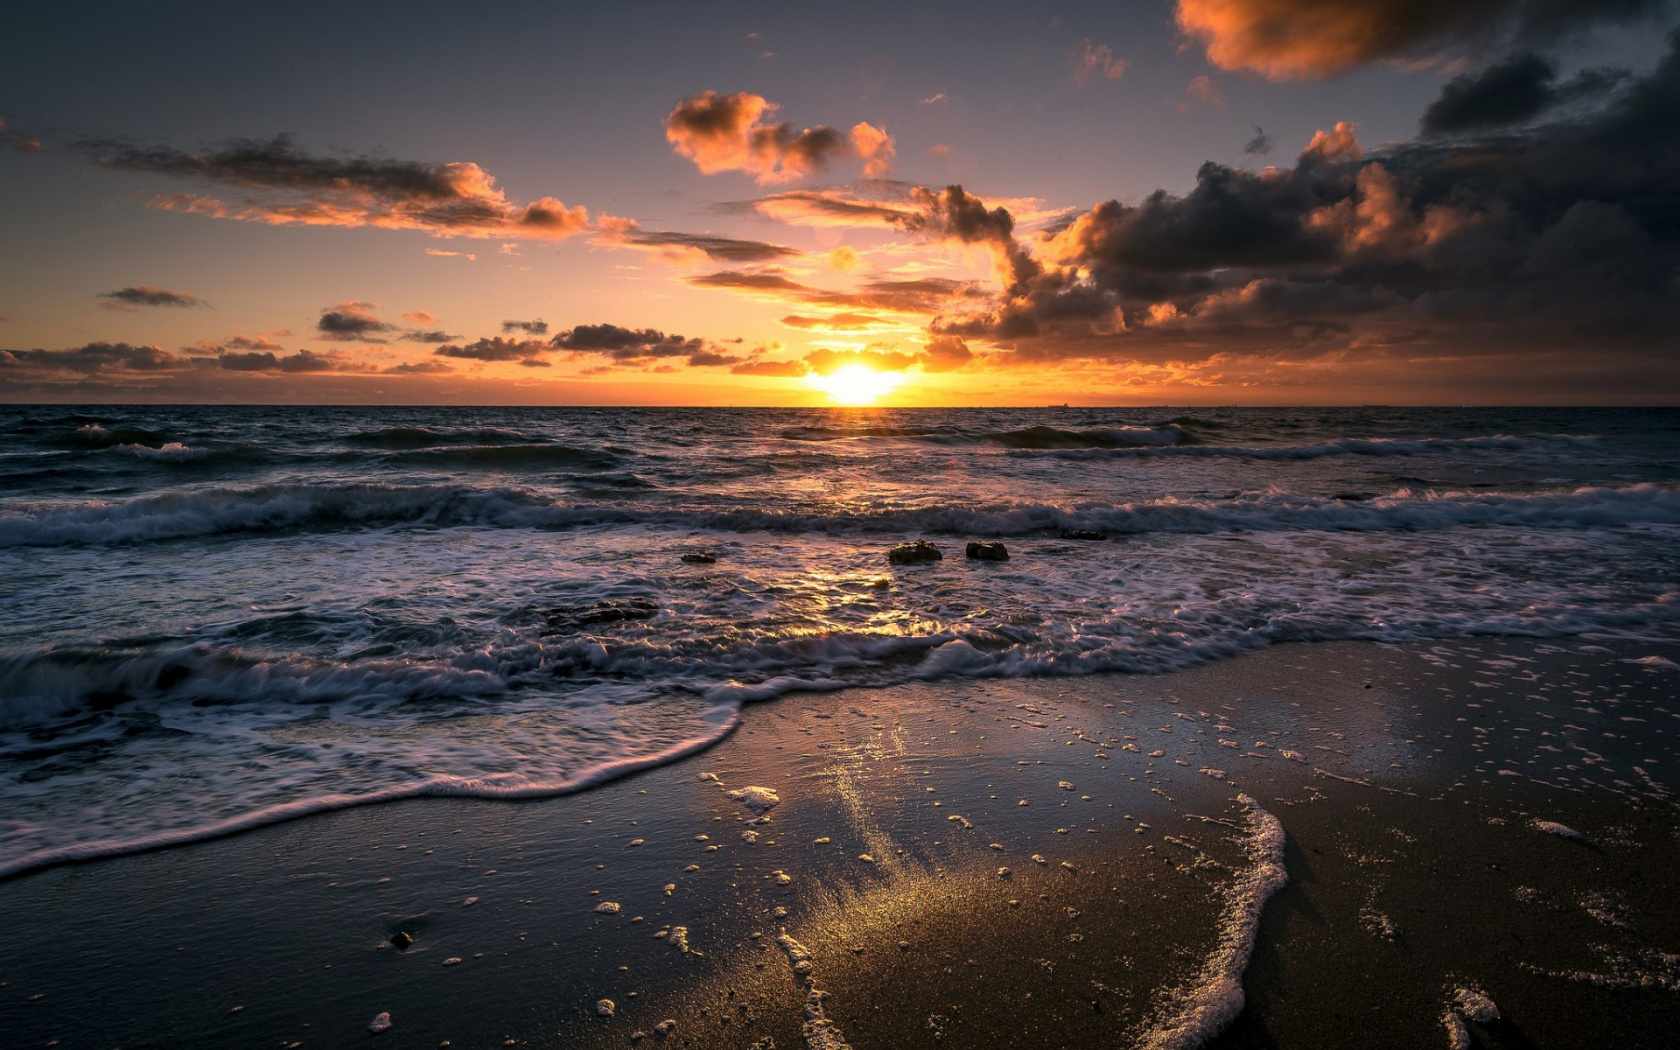 Zdarma tapeta na oceán s výhledem na pláž při východu slunce nad pěnovým oceánem